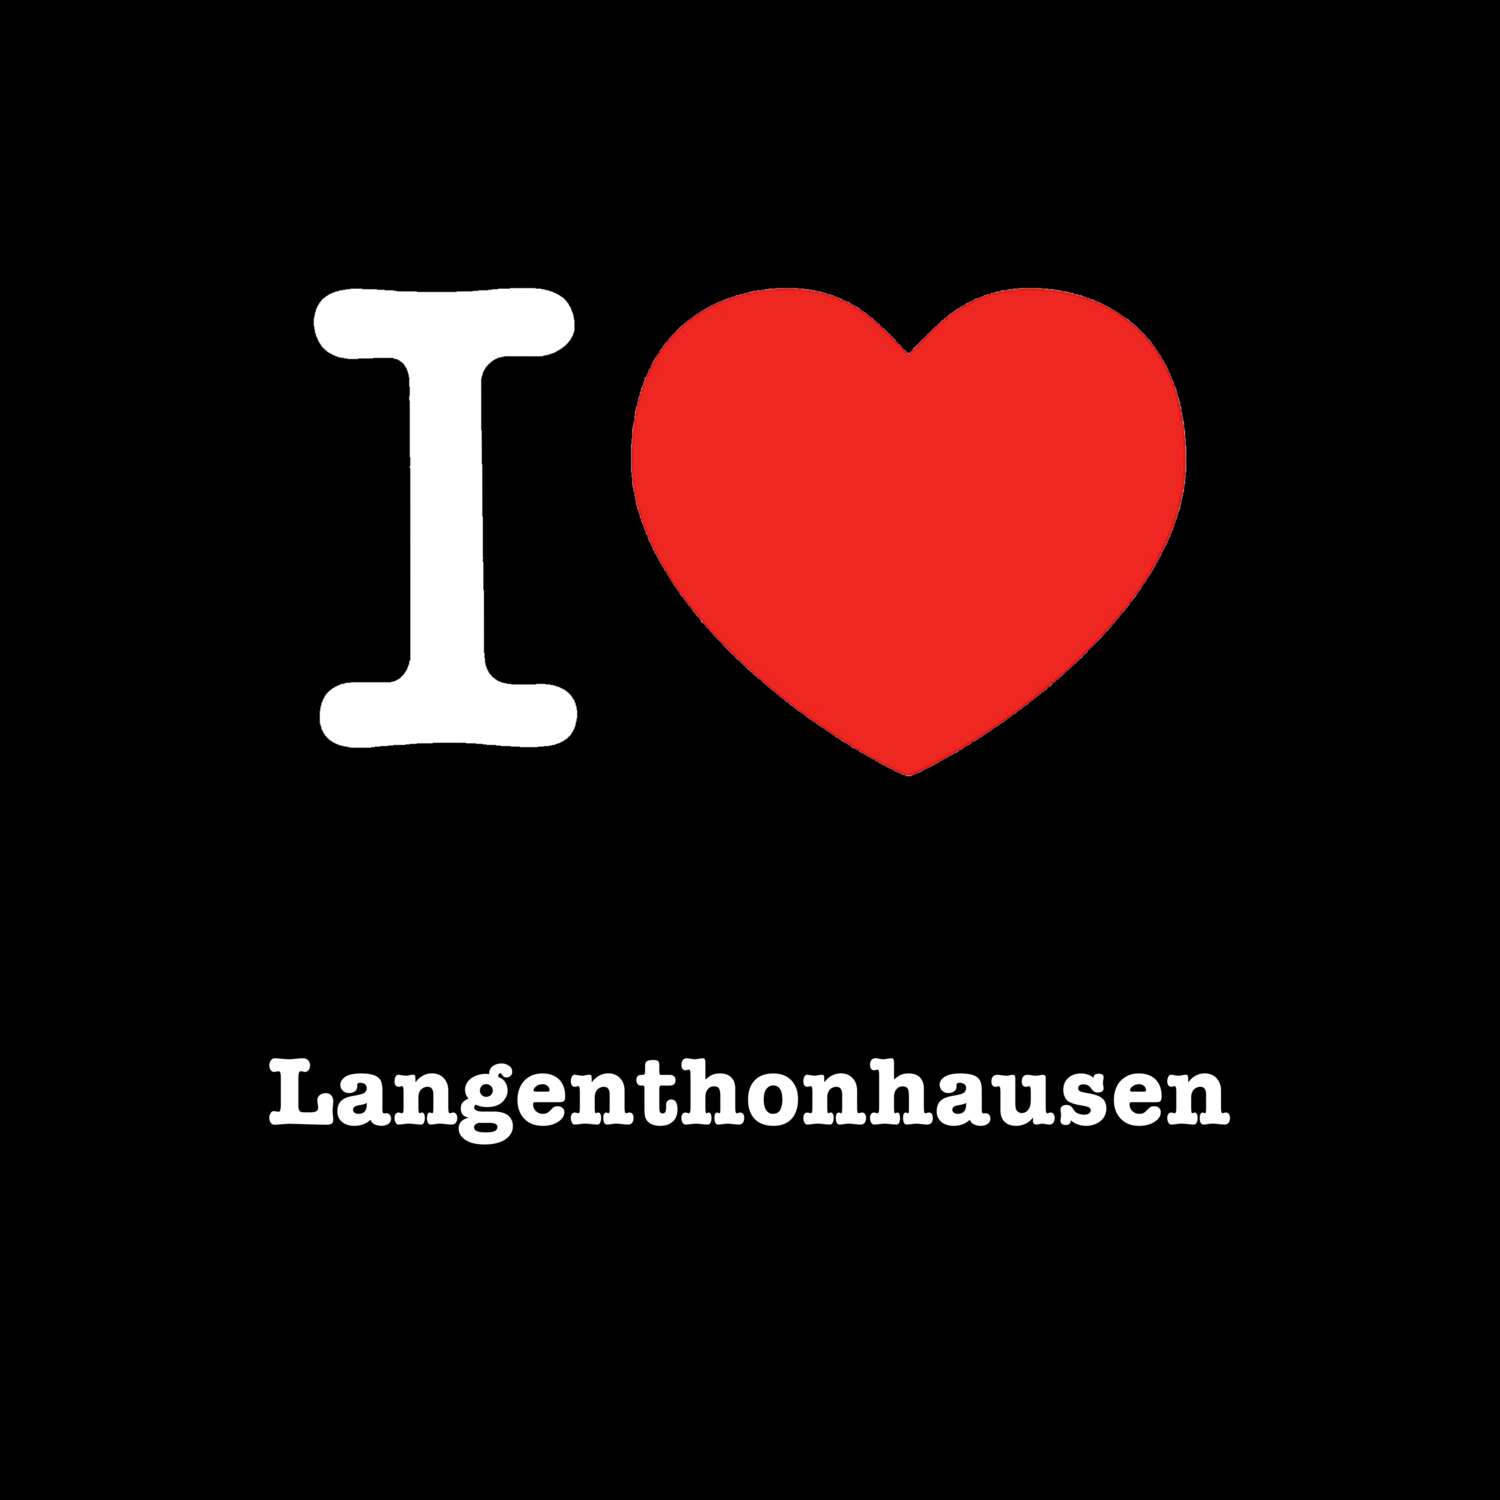 Langenthonhausen T-Shirt »I love«